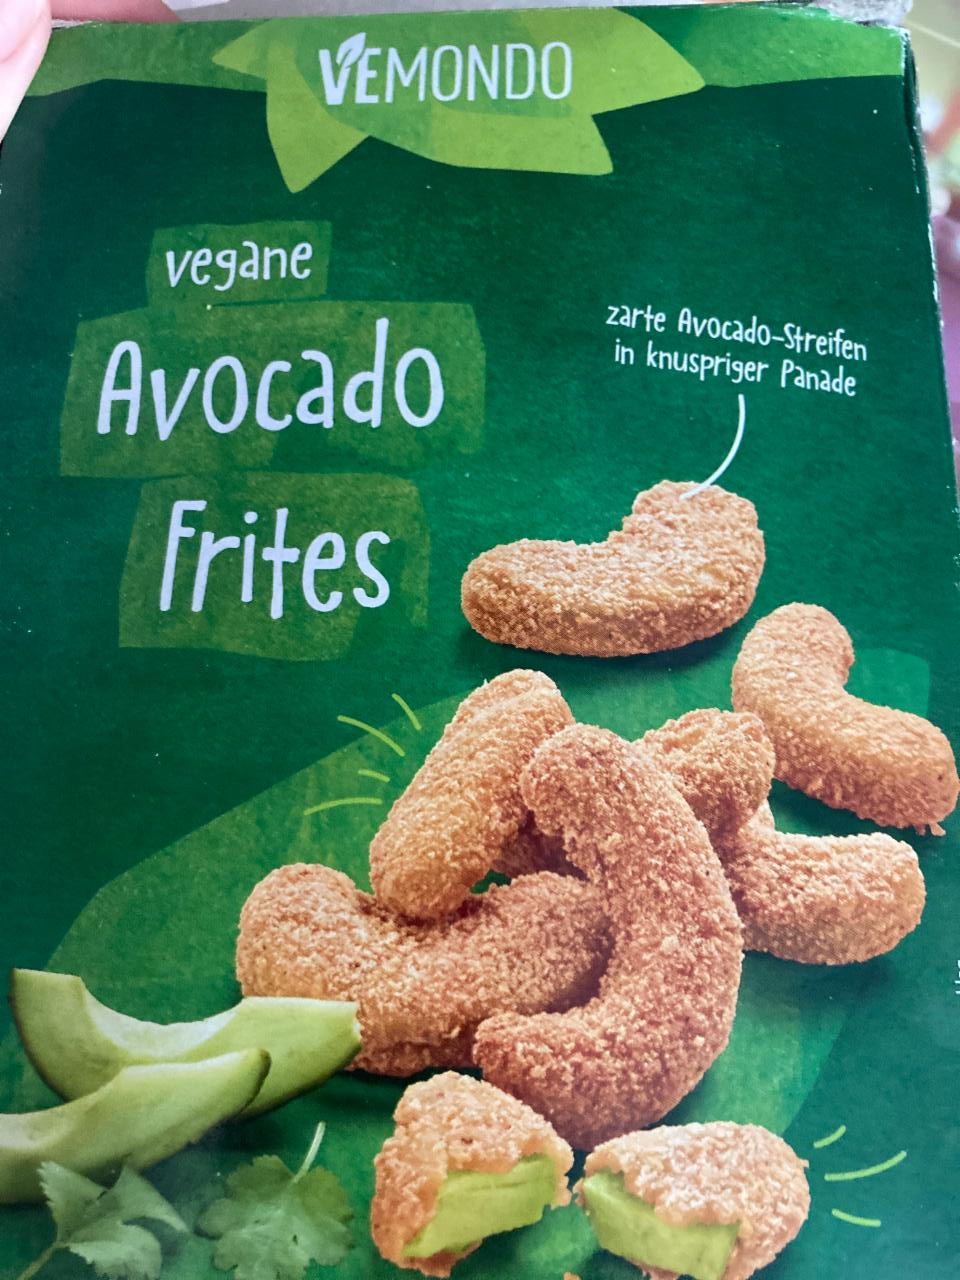 Vegane Avocado Frites Vemondo - kalorie, kJ a nutriční hodnoty